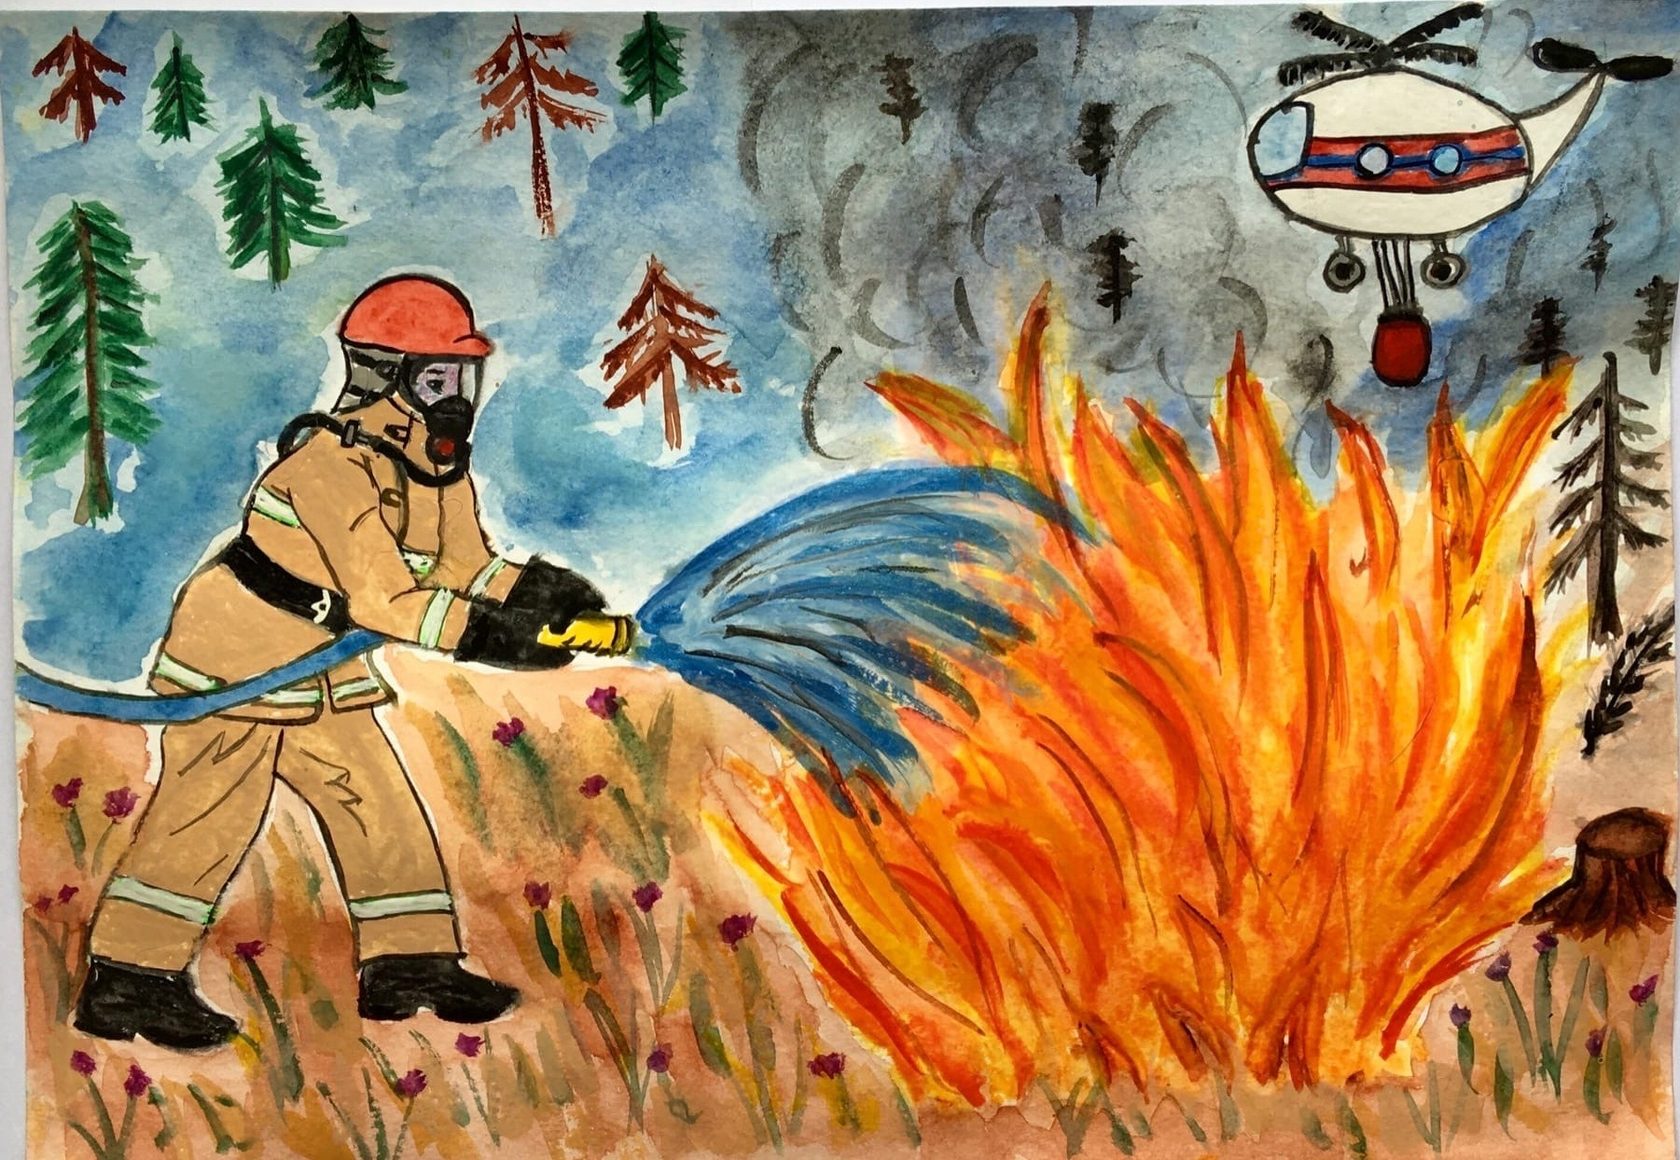 Рисунок на день пожарного